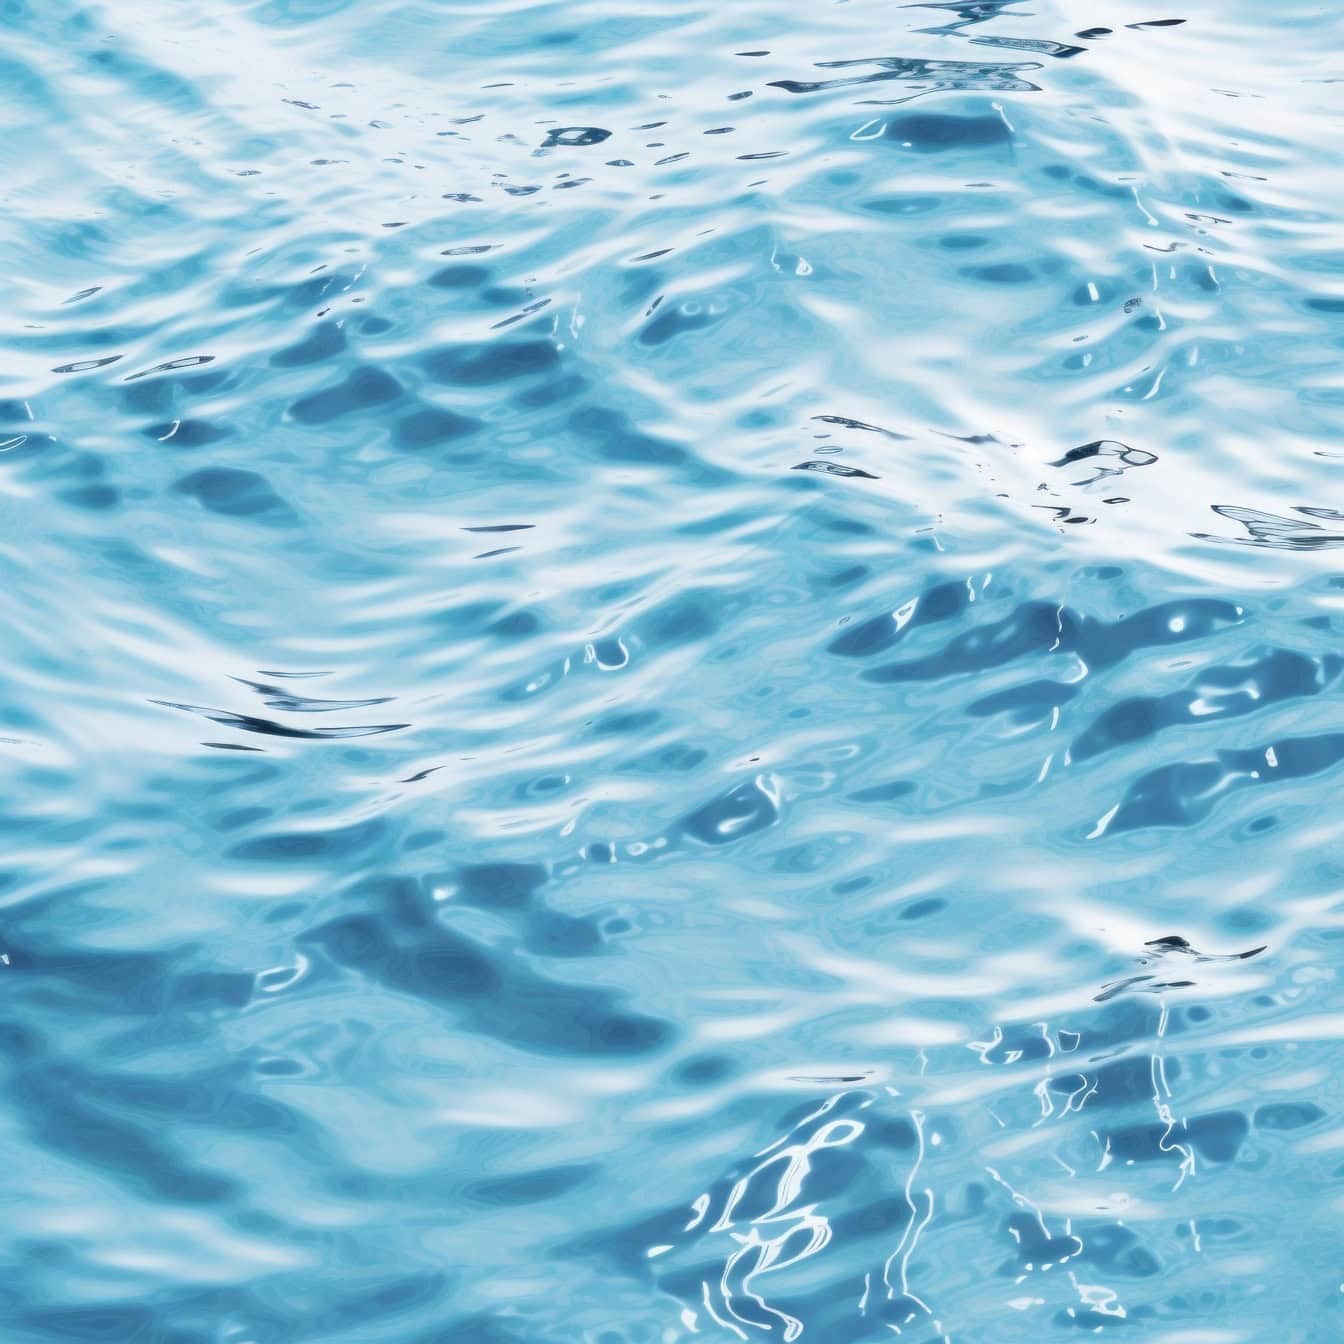 Комп’ютерна графіка текстури хвиль бірюзово-блакитної води